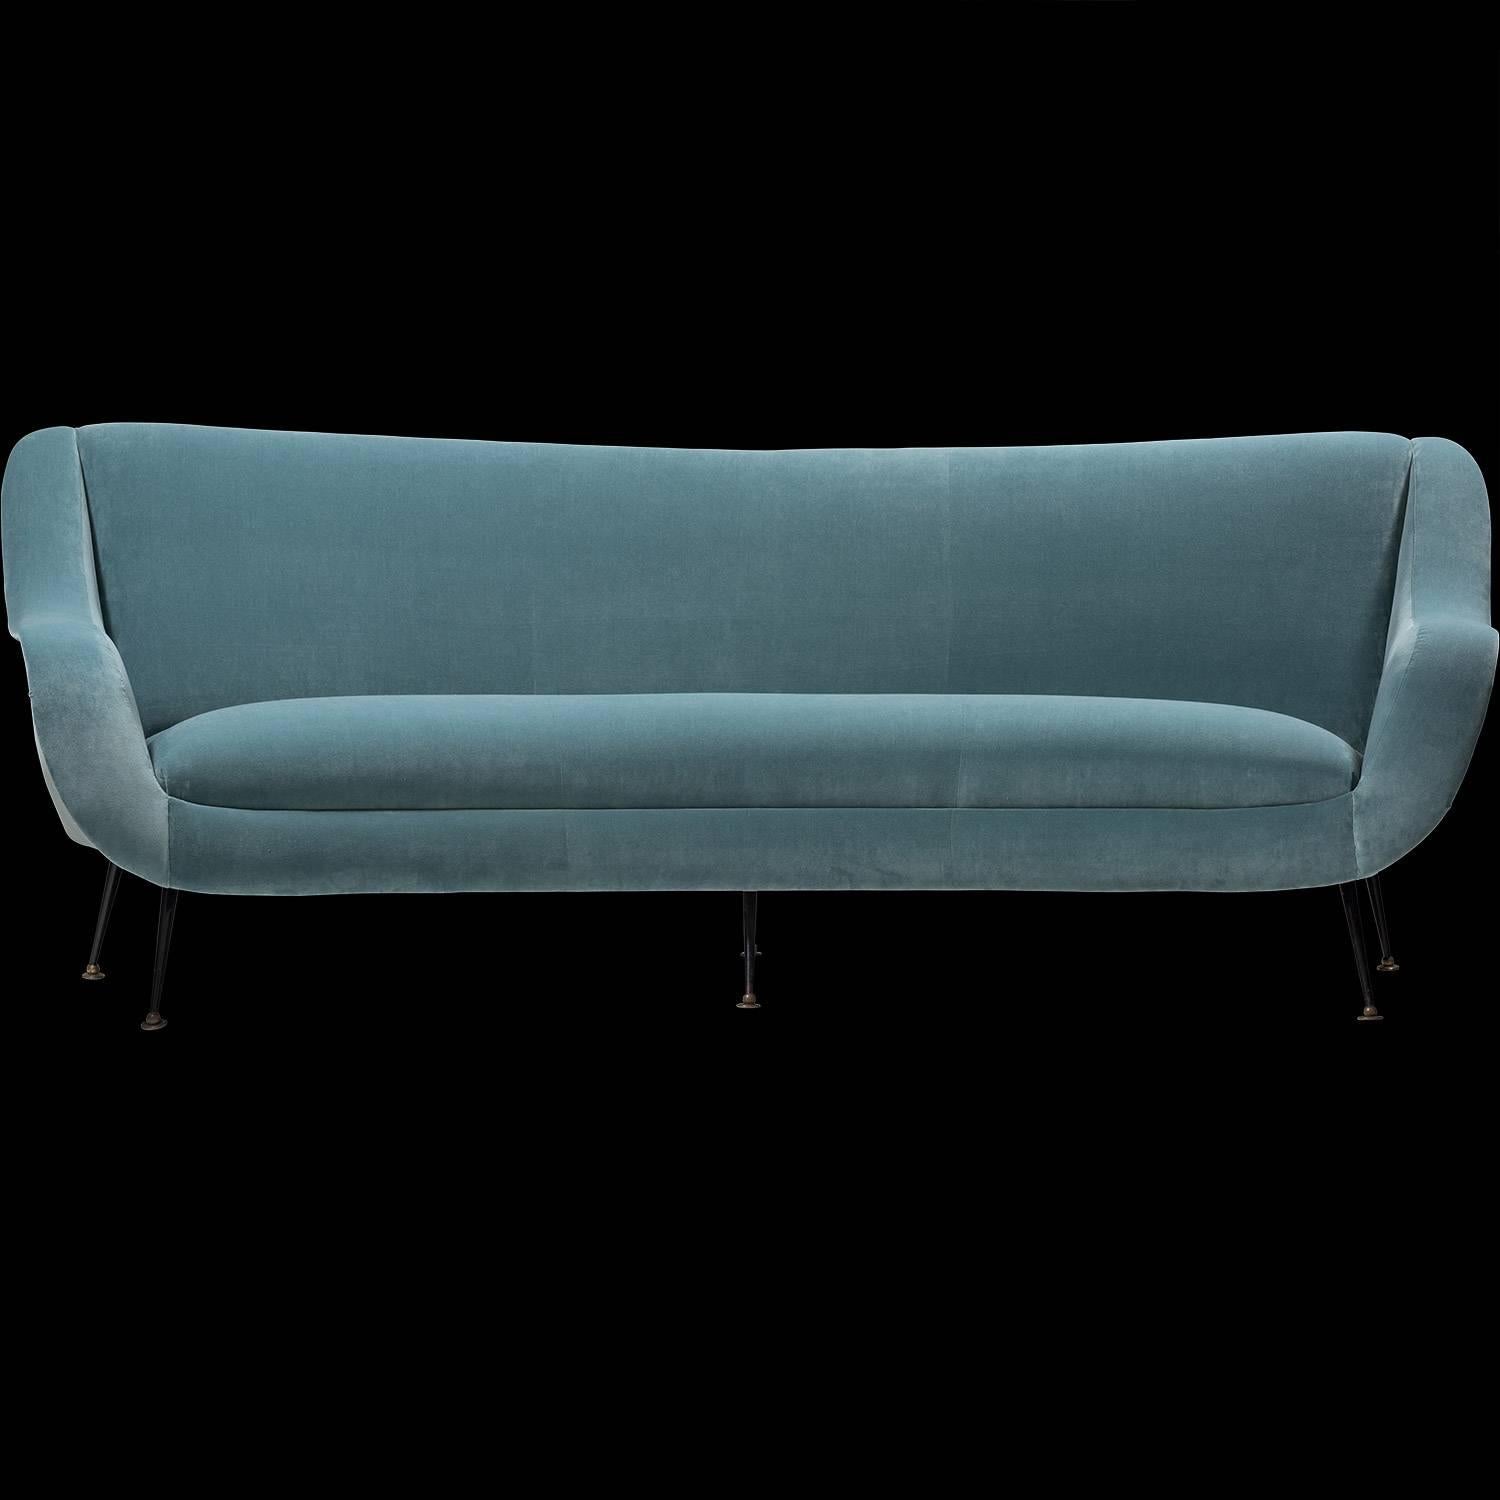 Mid-20th Century Modern Blue Velvet Sofa